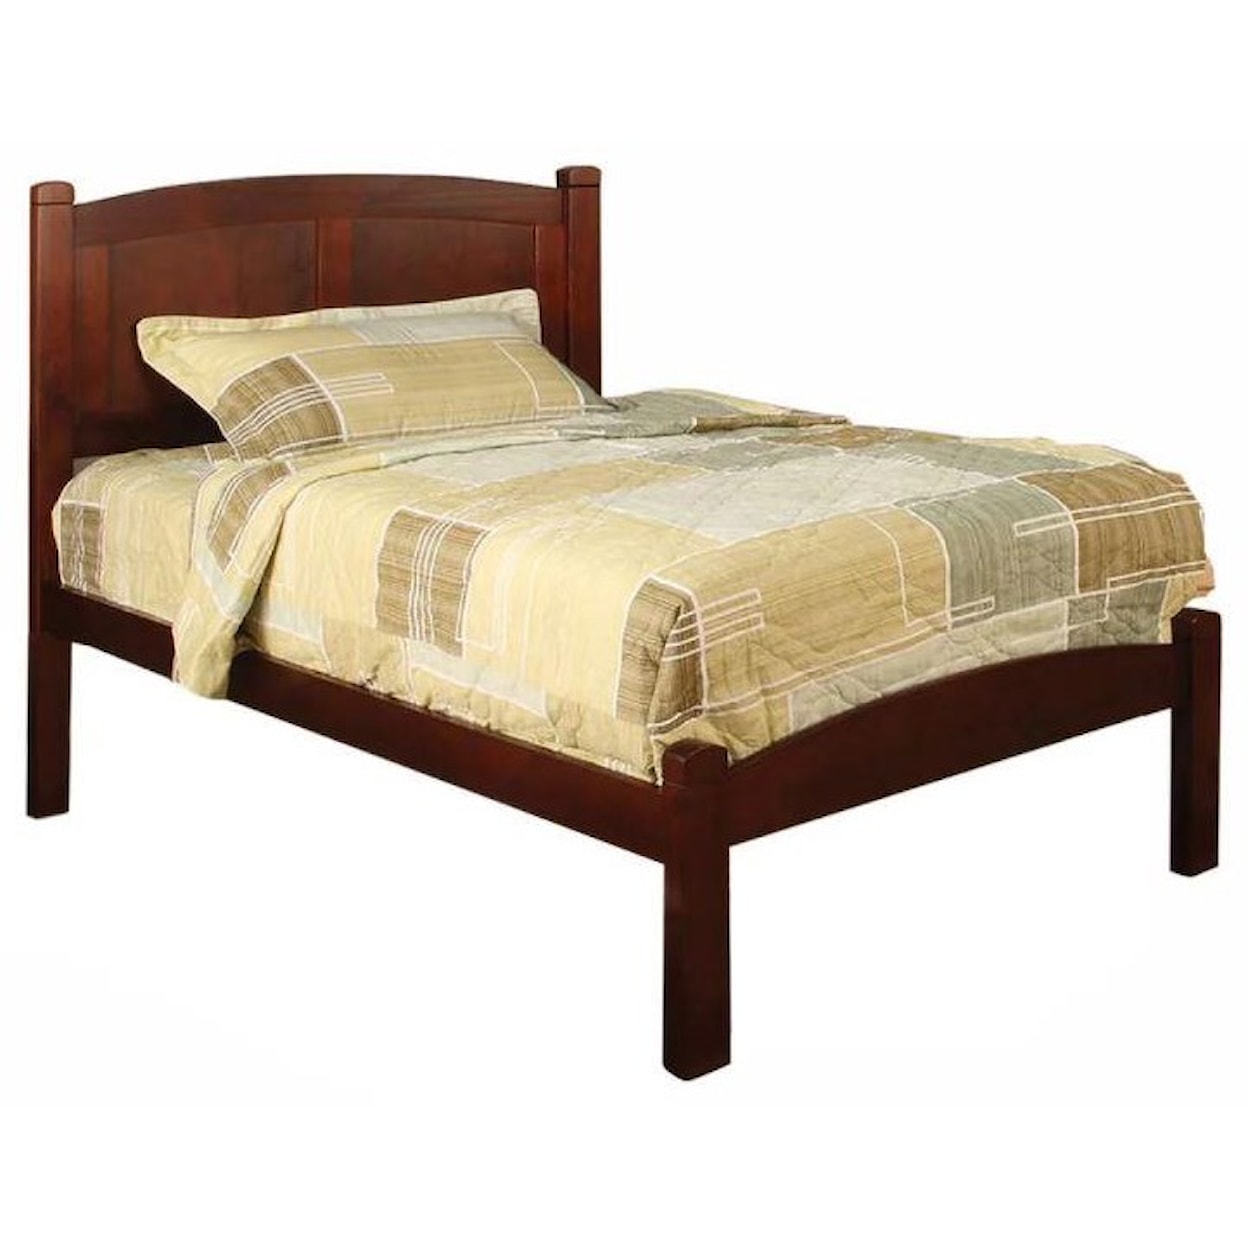 Furniture of America - FOA Cara Twin Bed